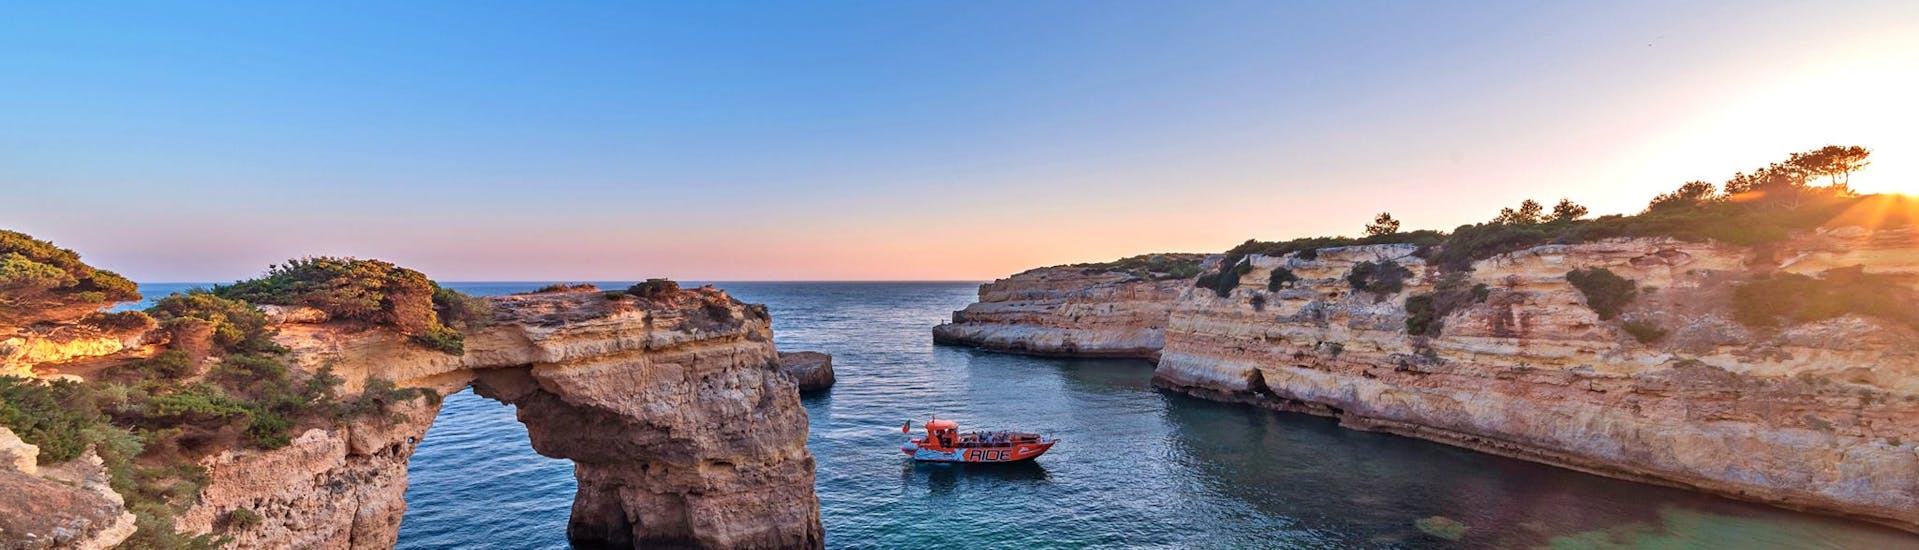 Gita in barca da Albufeira a Benagil  e tramonto con XRide Algarve.